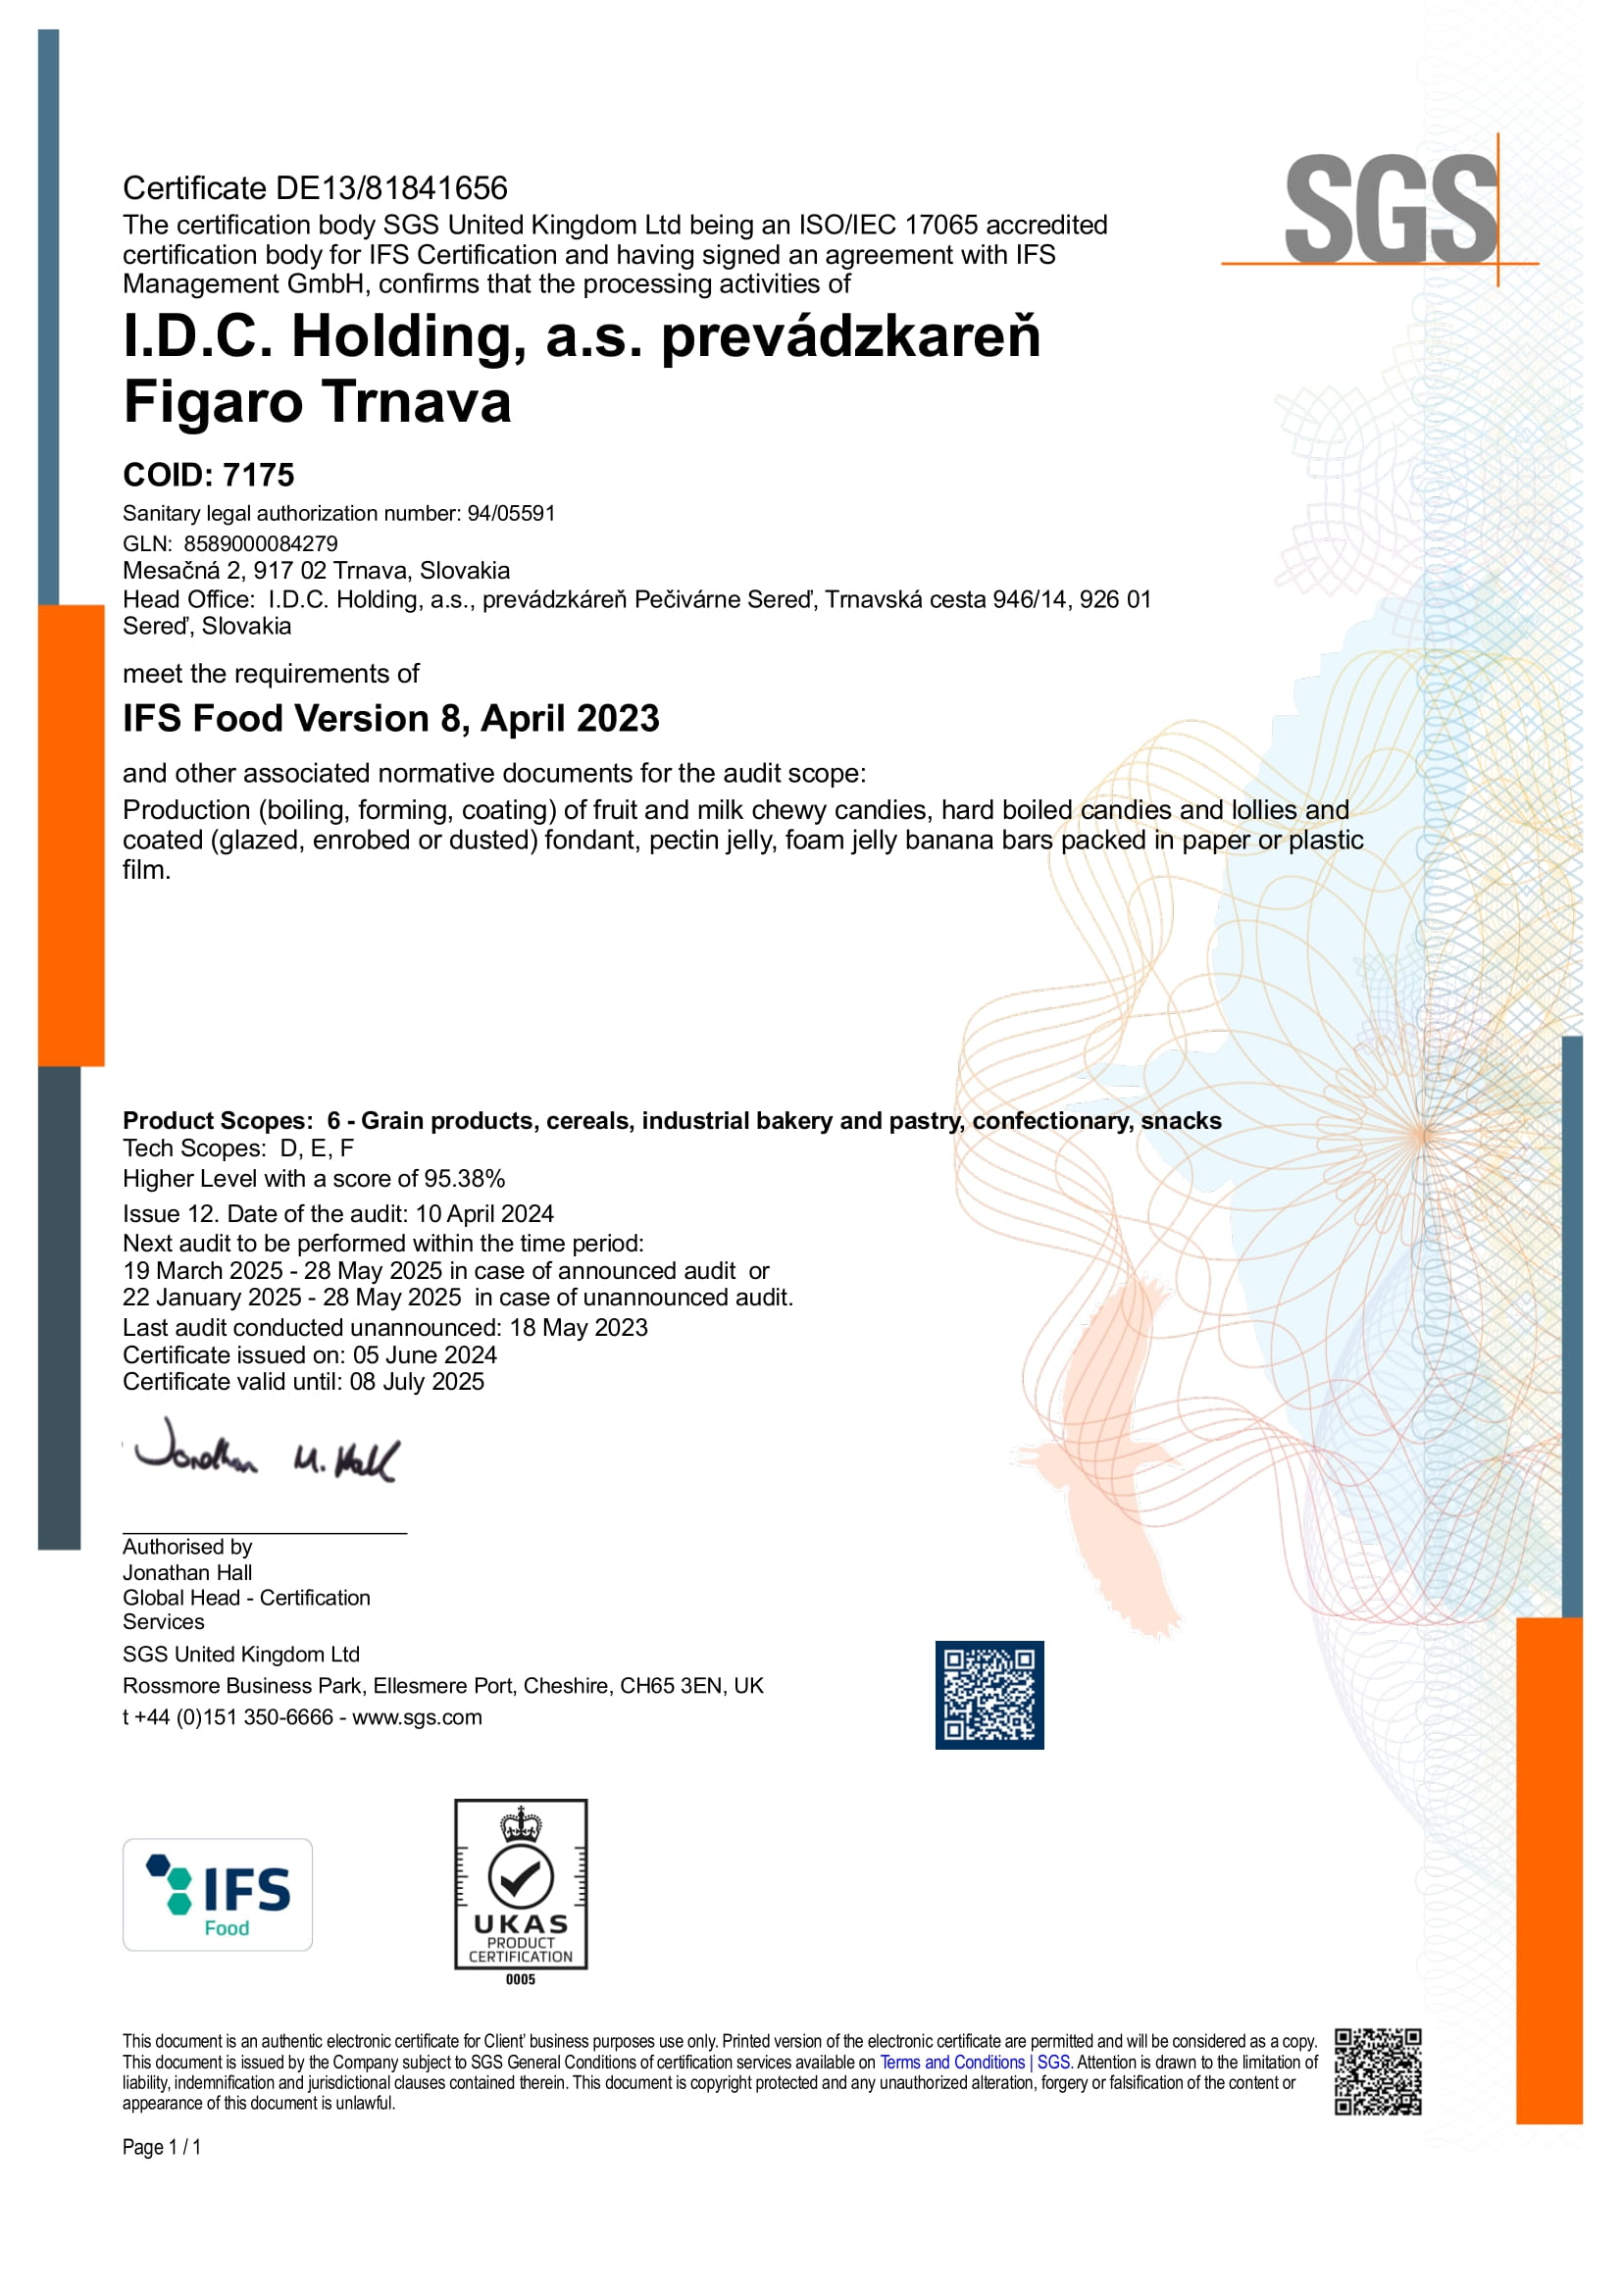 IFS Figaro Trnava.PDF